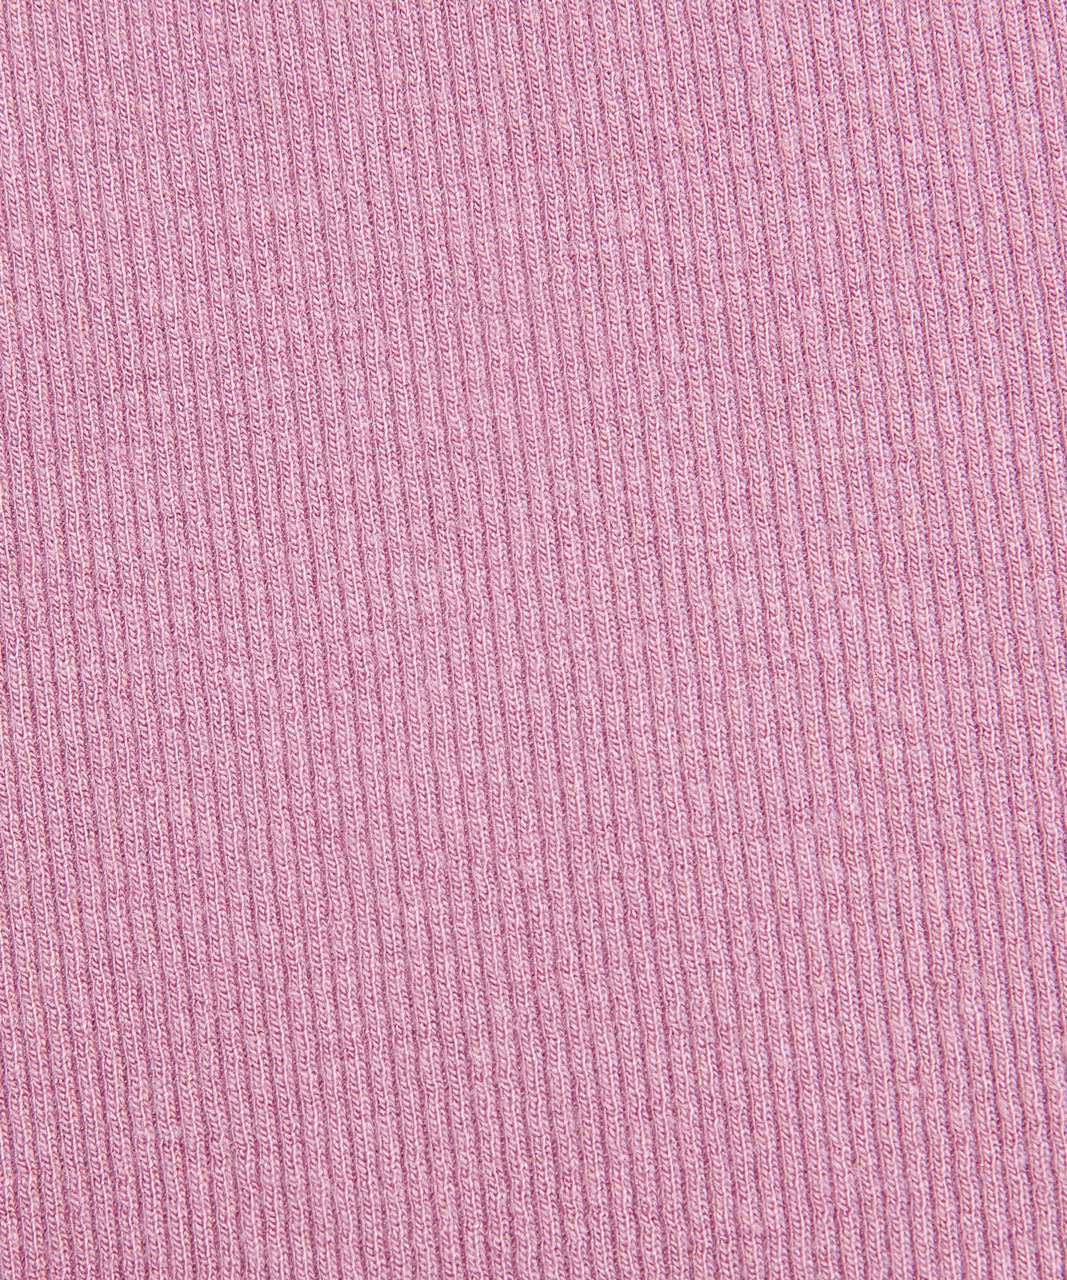 Pink Velvet Dust Try On @lululemon #lululemon #velvetdust #velvetdustl